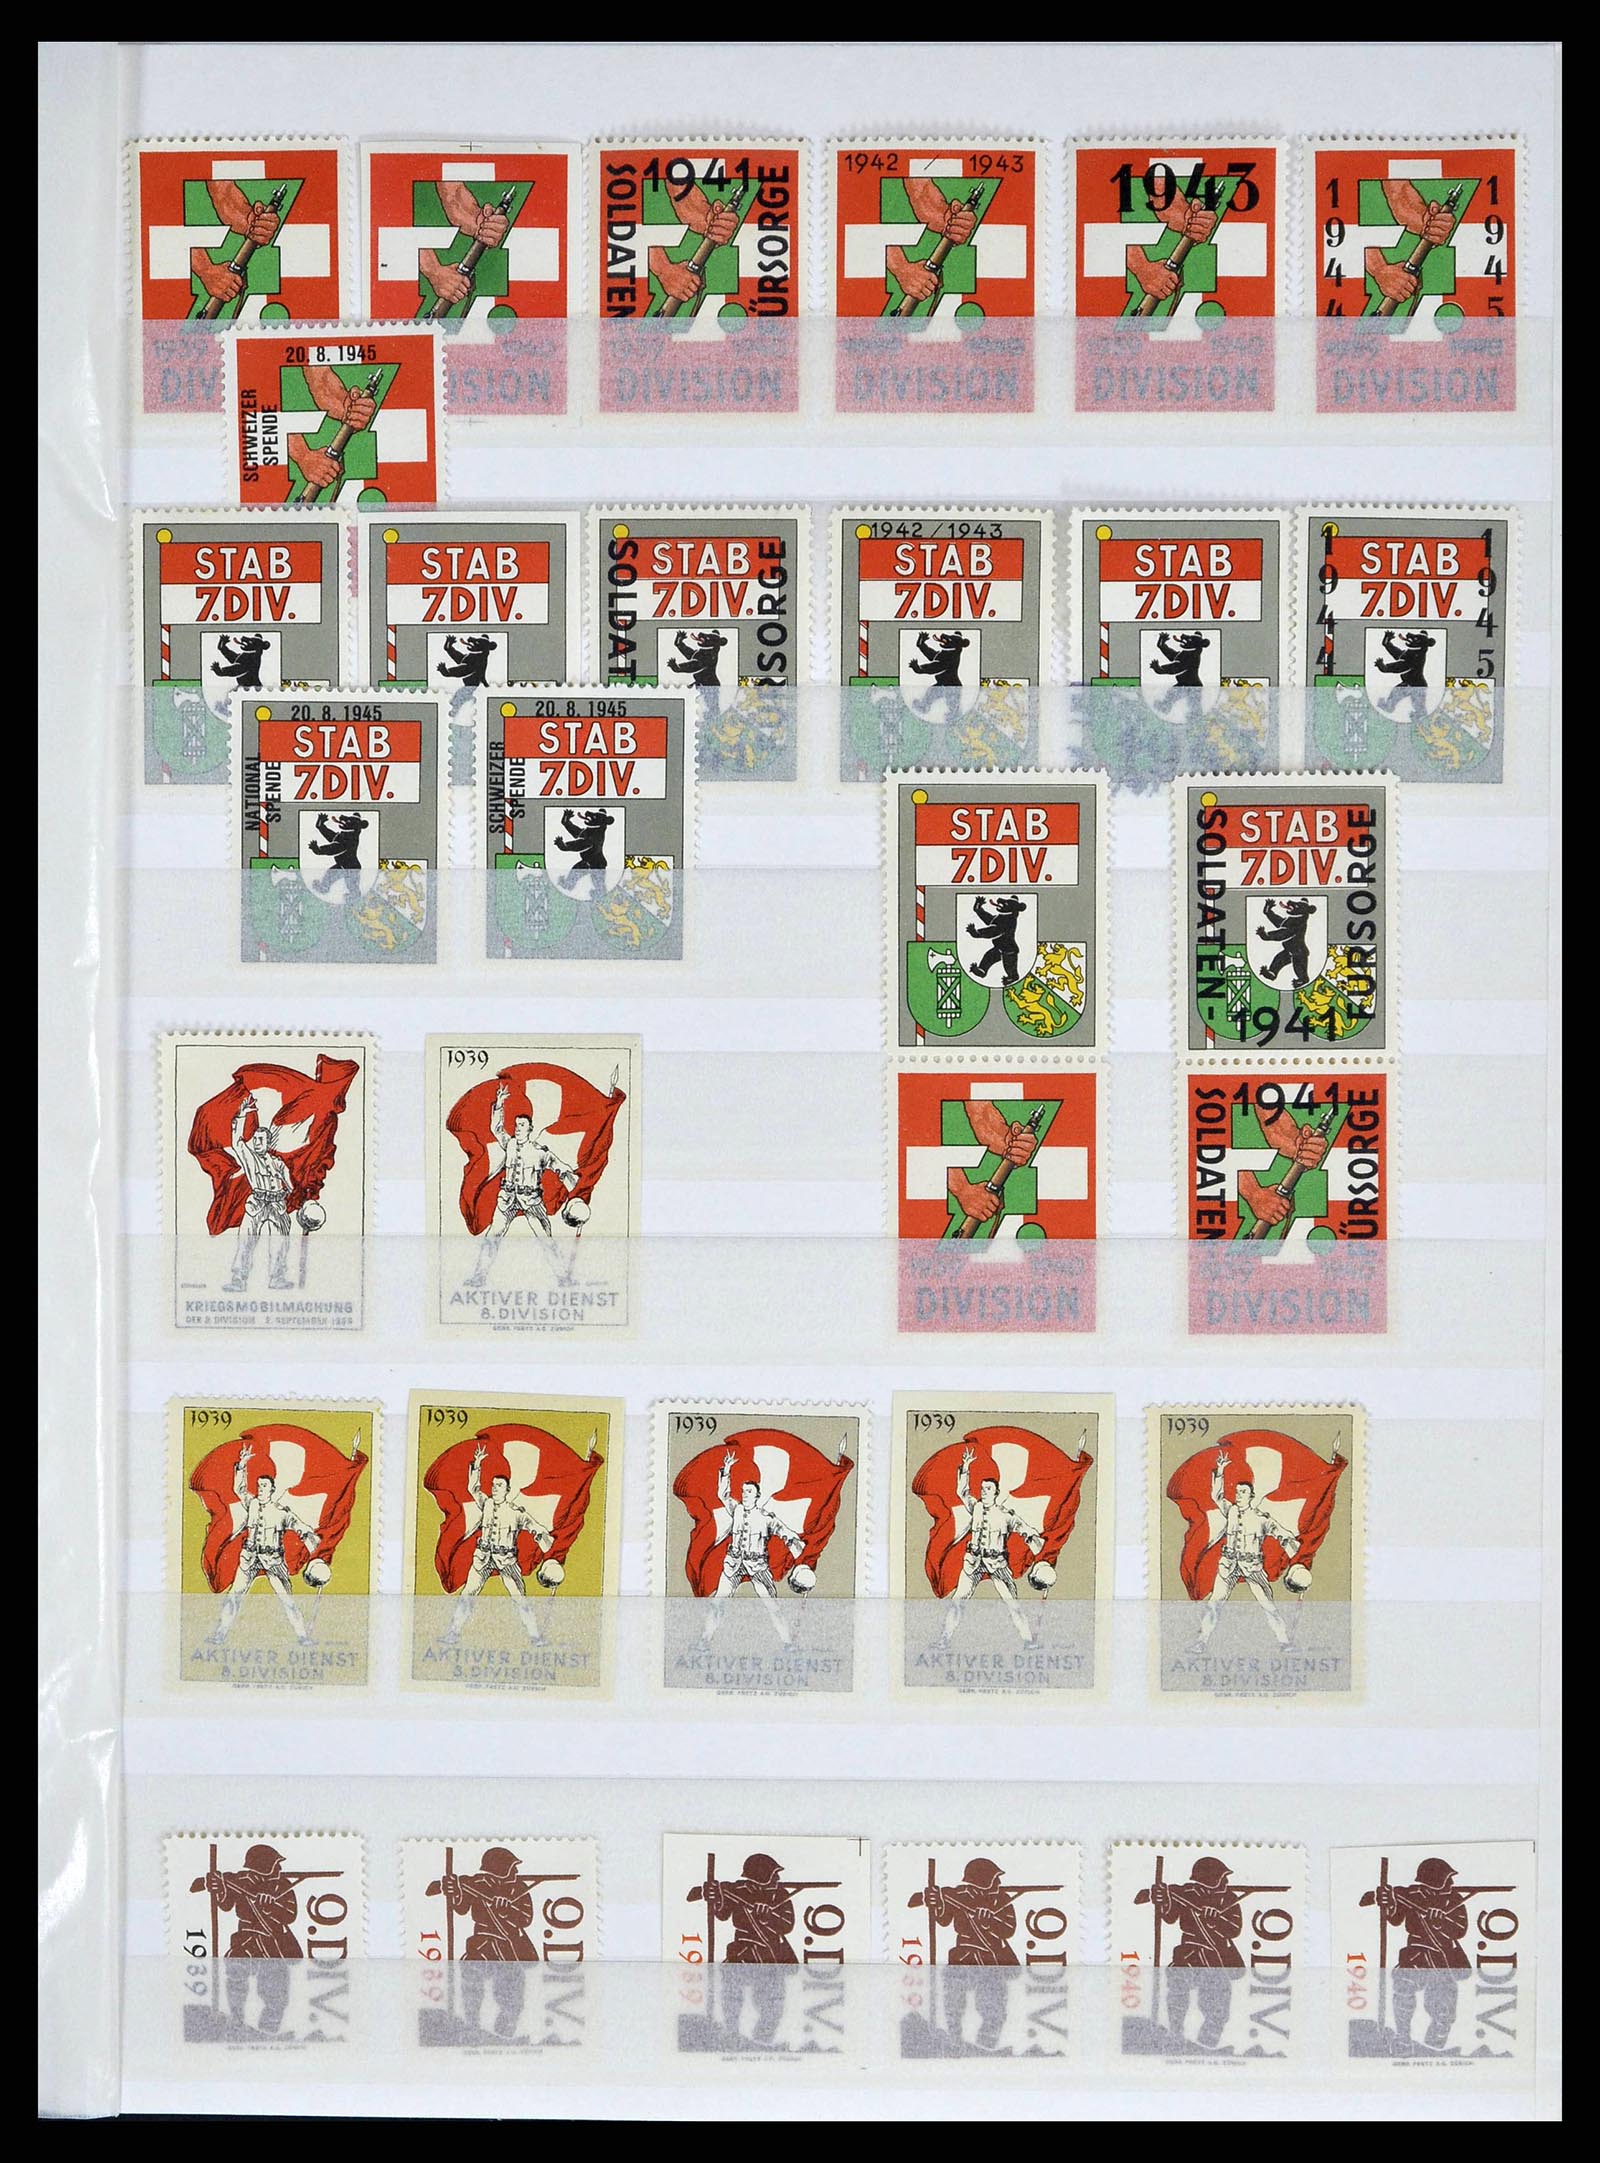 38695 0011 - Stamp collection 38695 Switzerland soldierstamps 1914-1945.